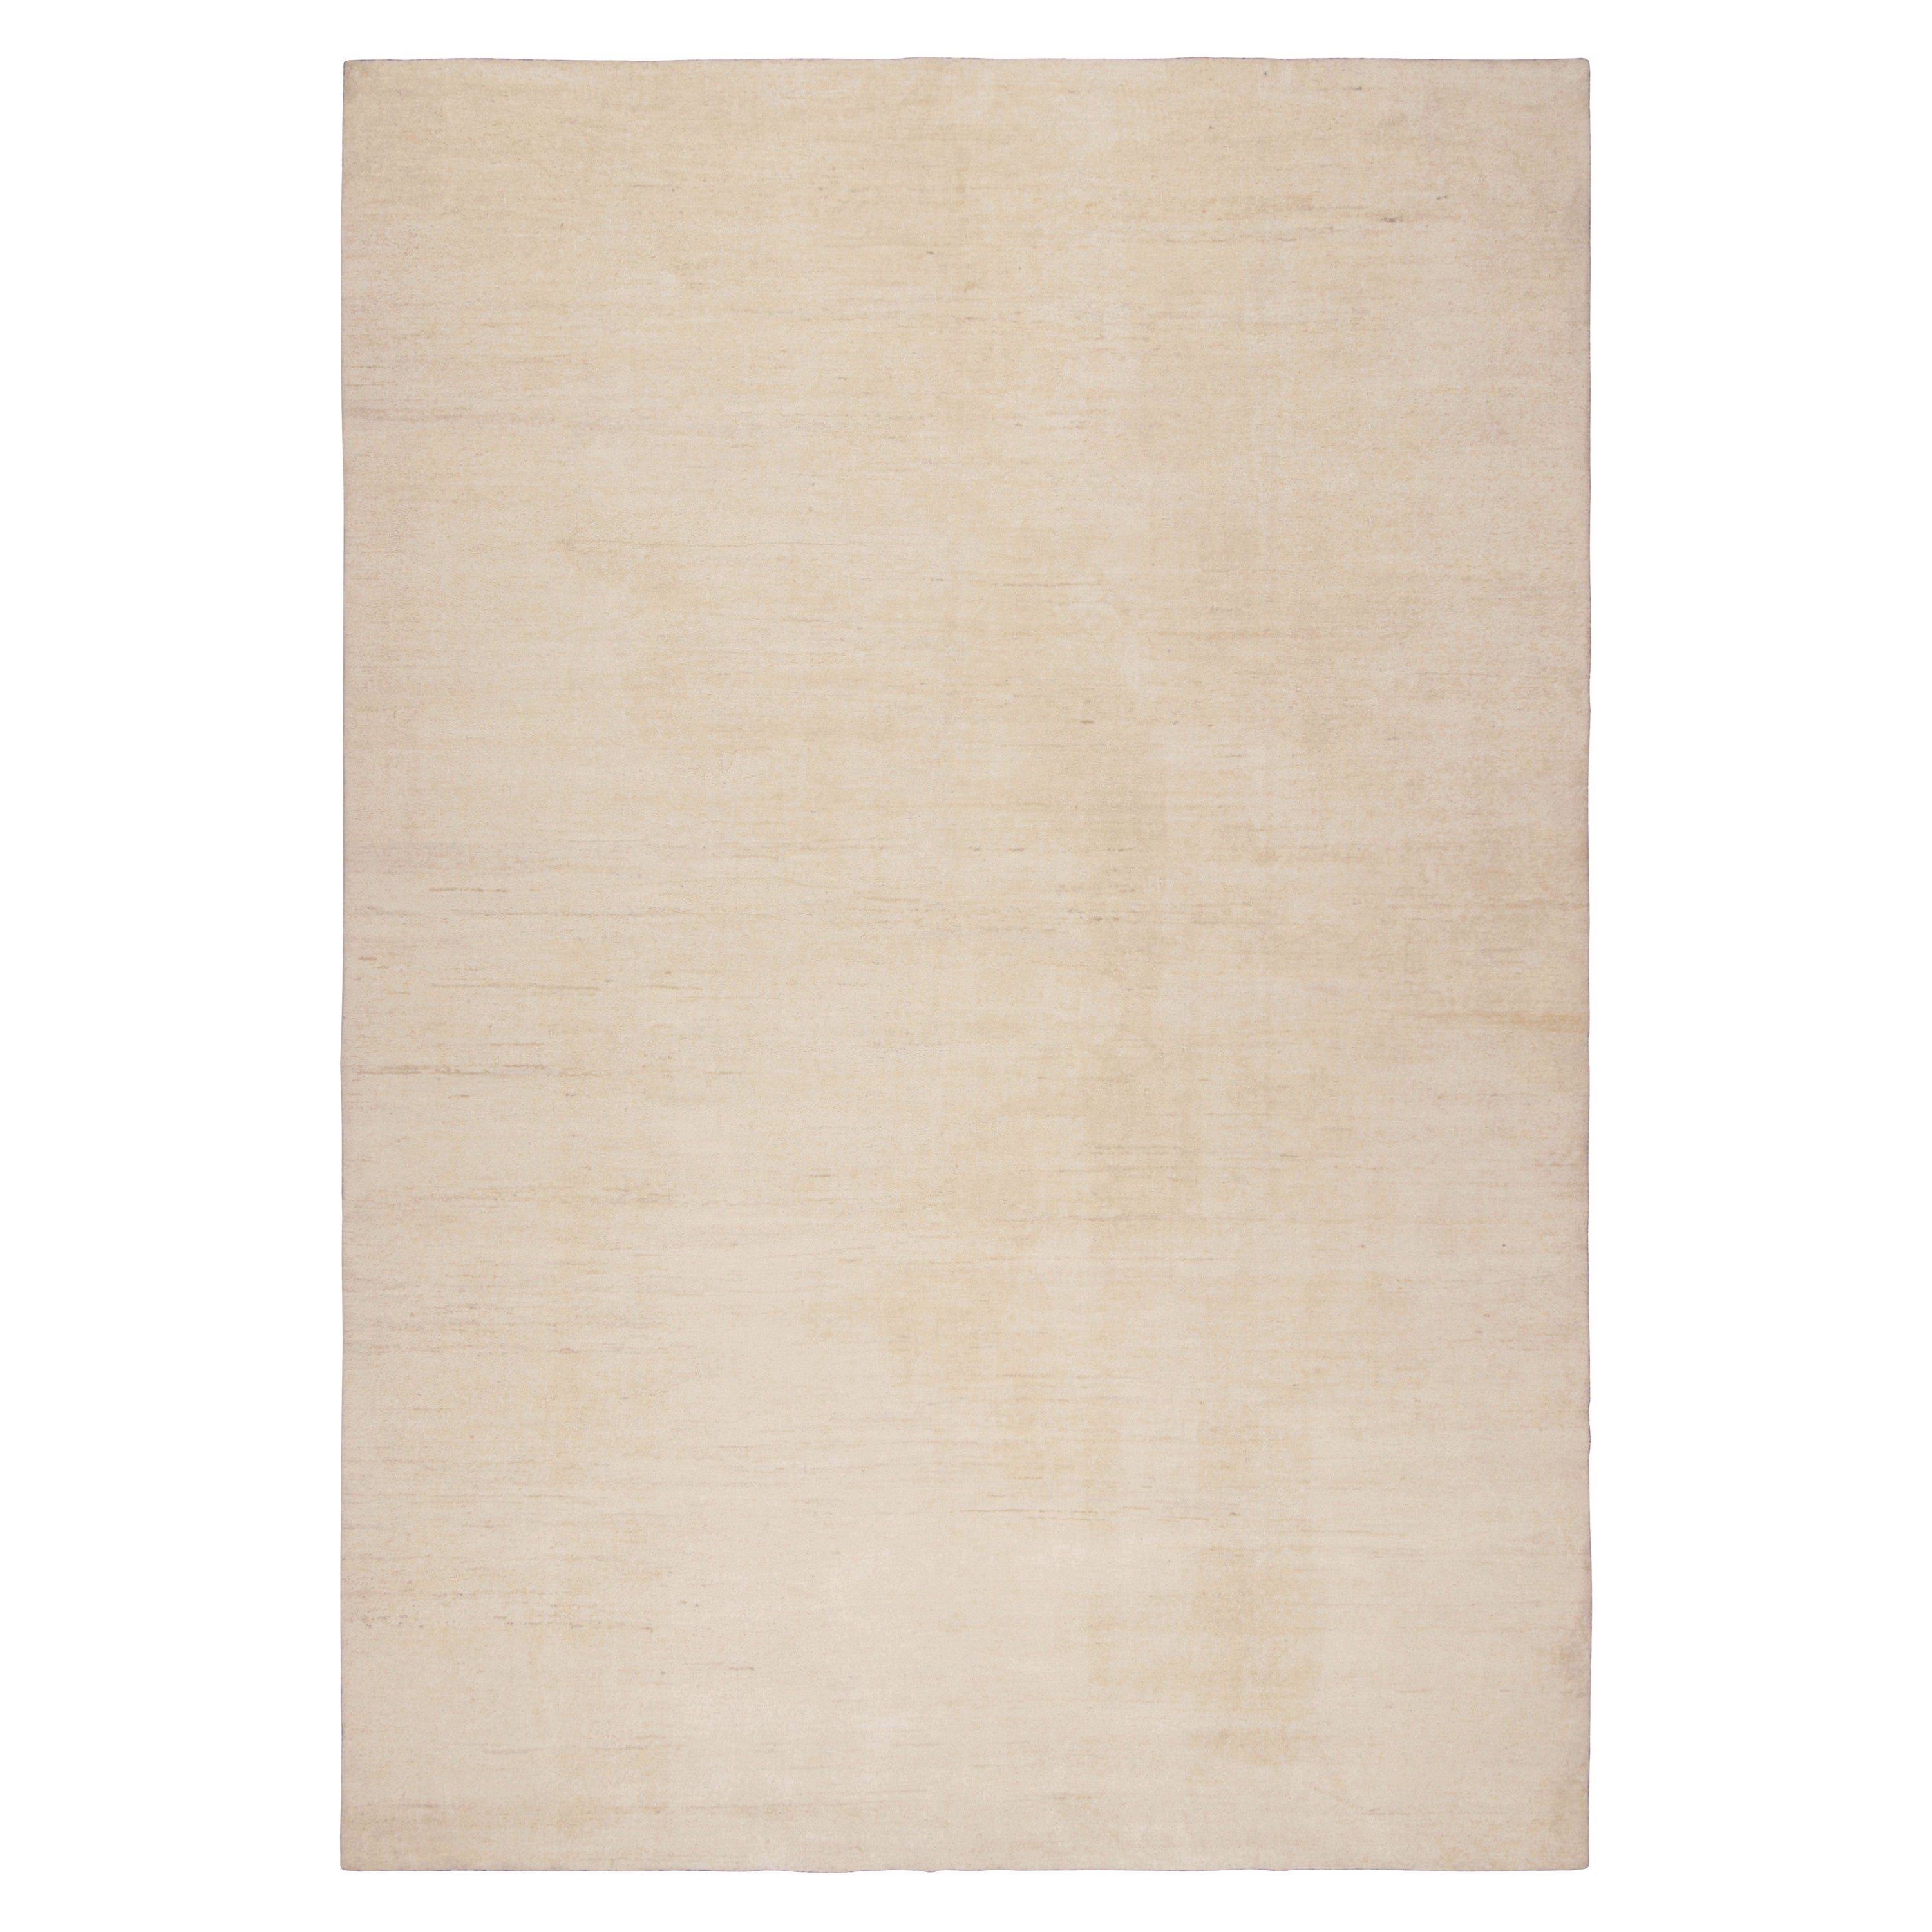 Noué à la main en laine, ce tapis contemporain 11x16 de couleur beige, qui vient s'ajouter à la collection Rug & Kilim Textural, est une interprétation inventive des tapis massifs, dont les rayures subtiles apportent du mouvement.

Sur le Design :